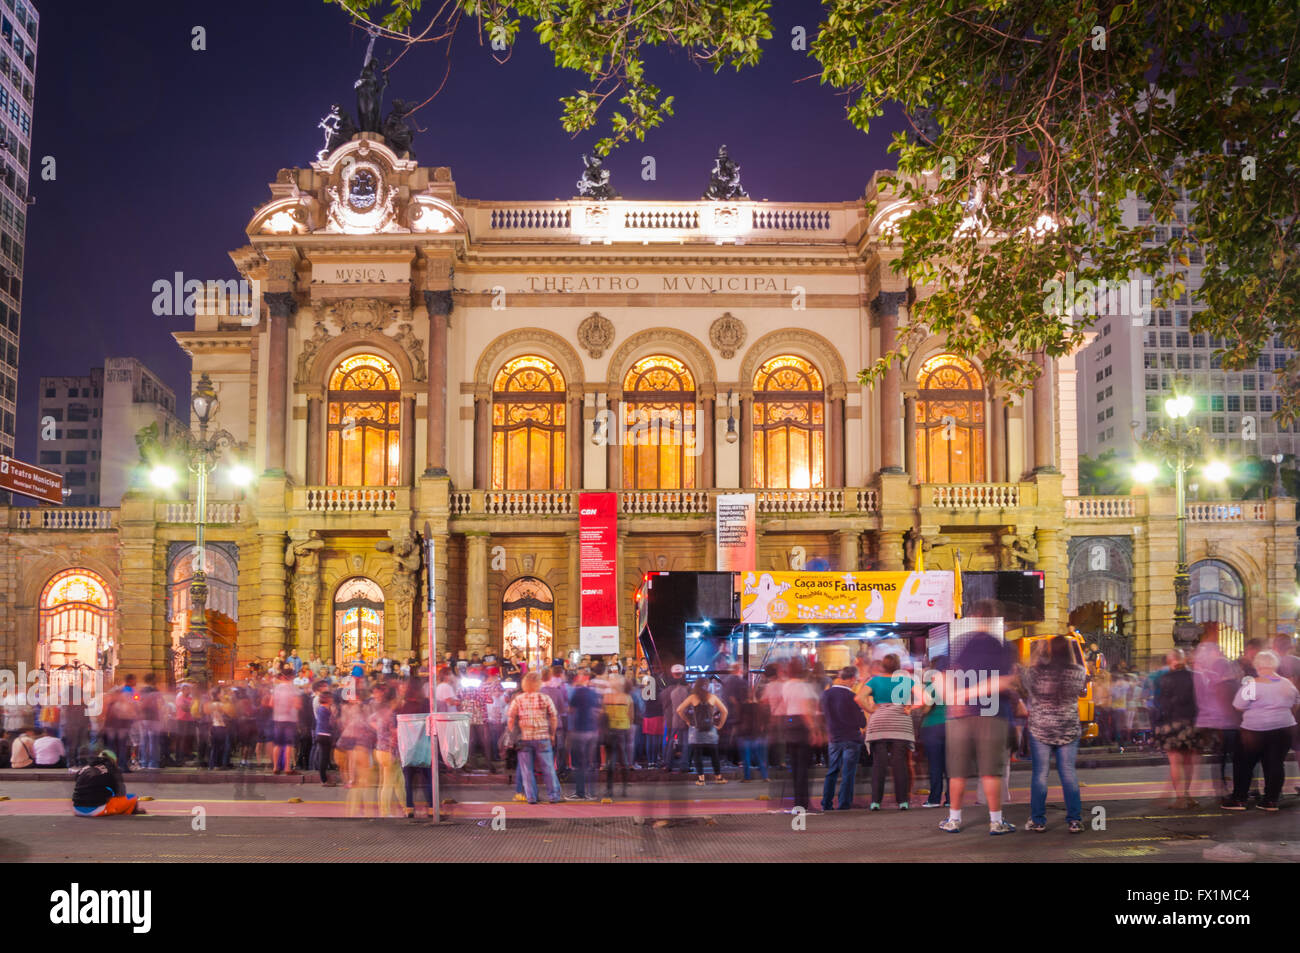 Théâtre municipal de São Paulo, construit en 1903 et ouvert en 1911, avec l'opéra hamlet Banque D'Images